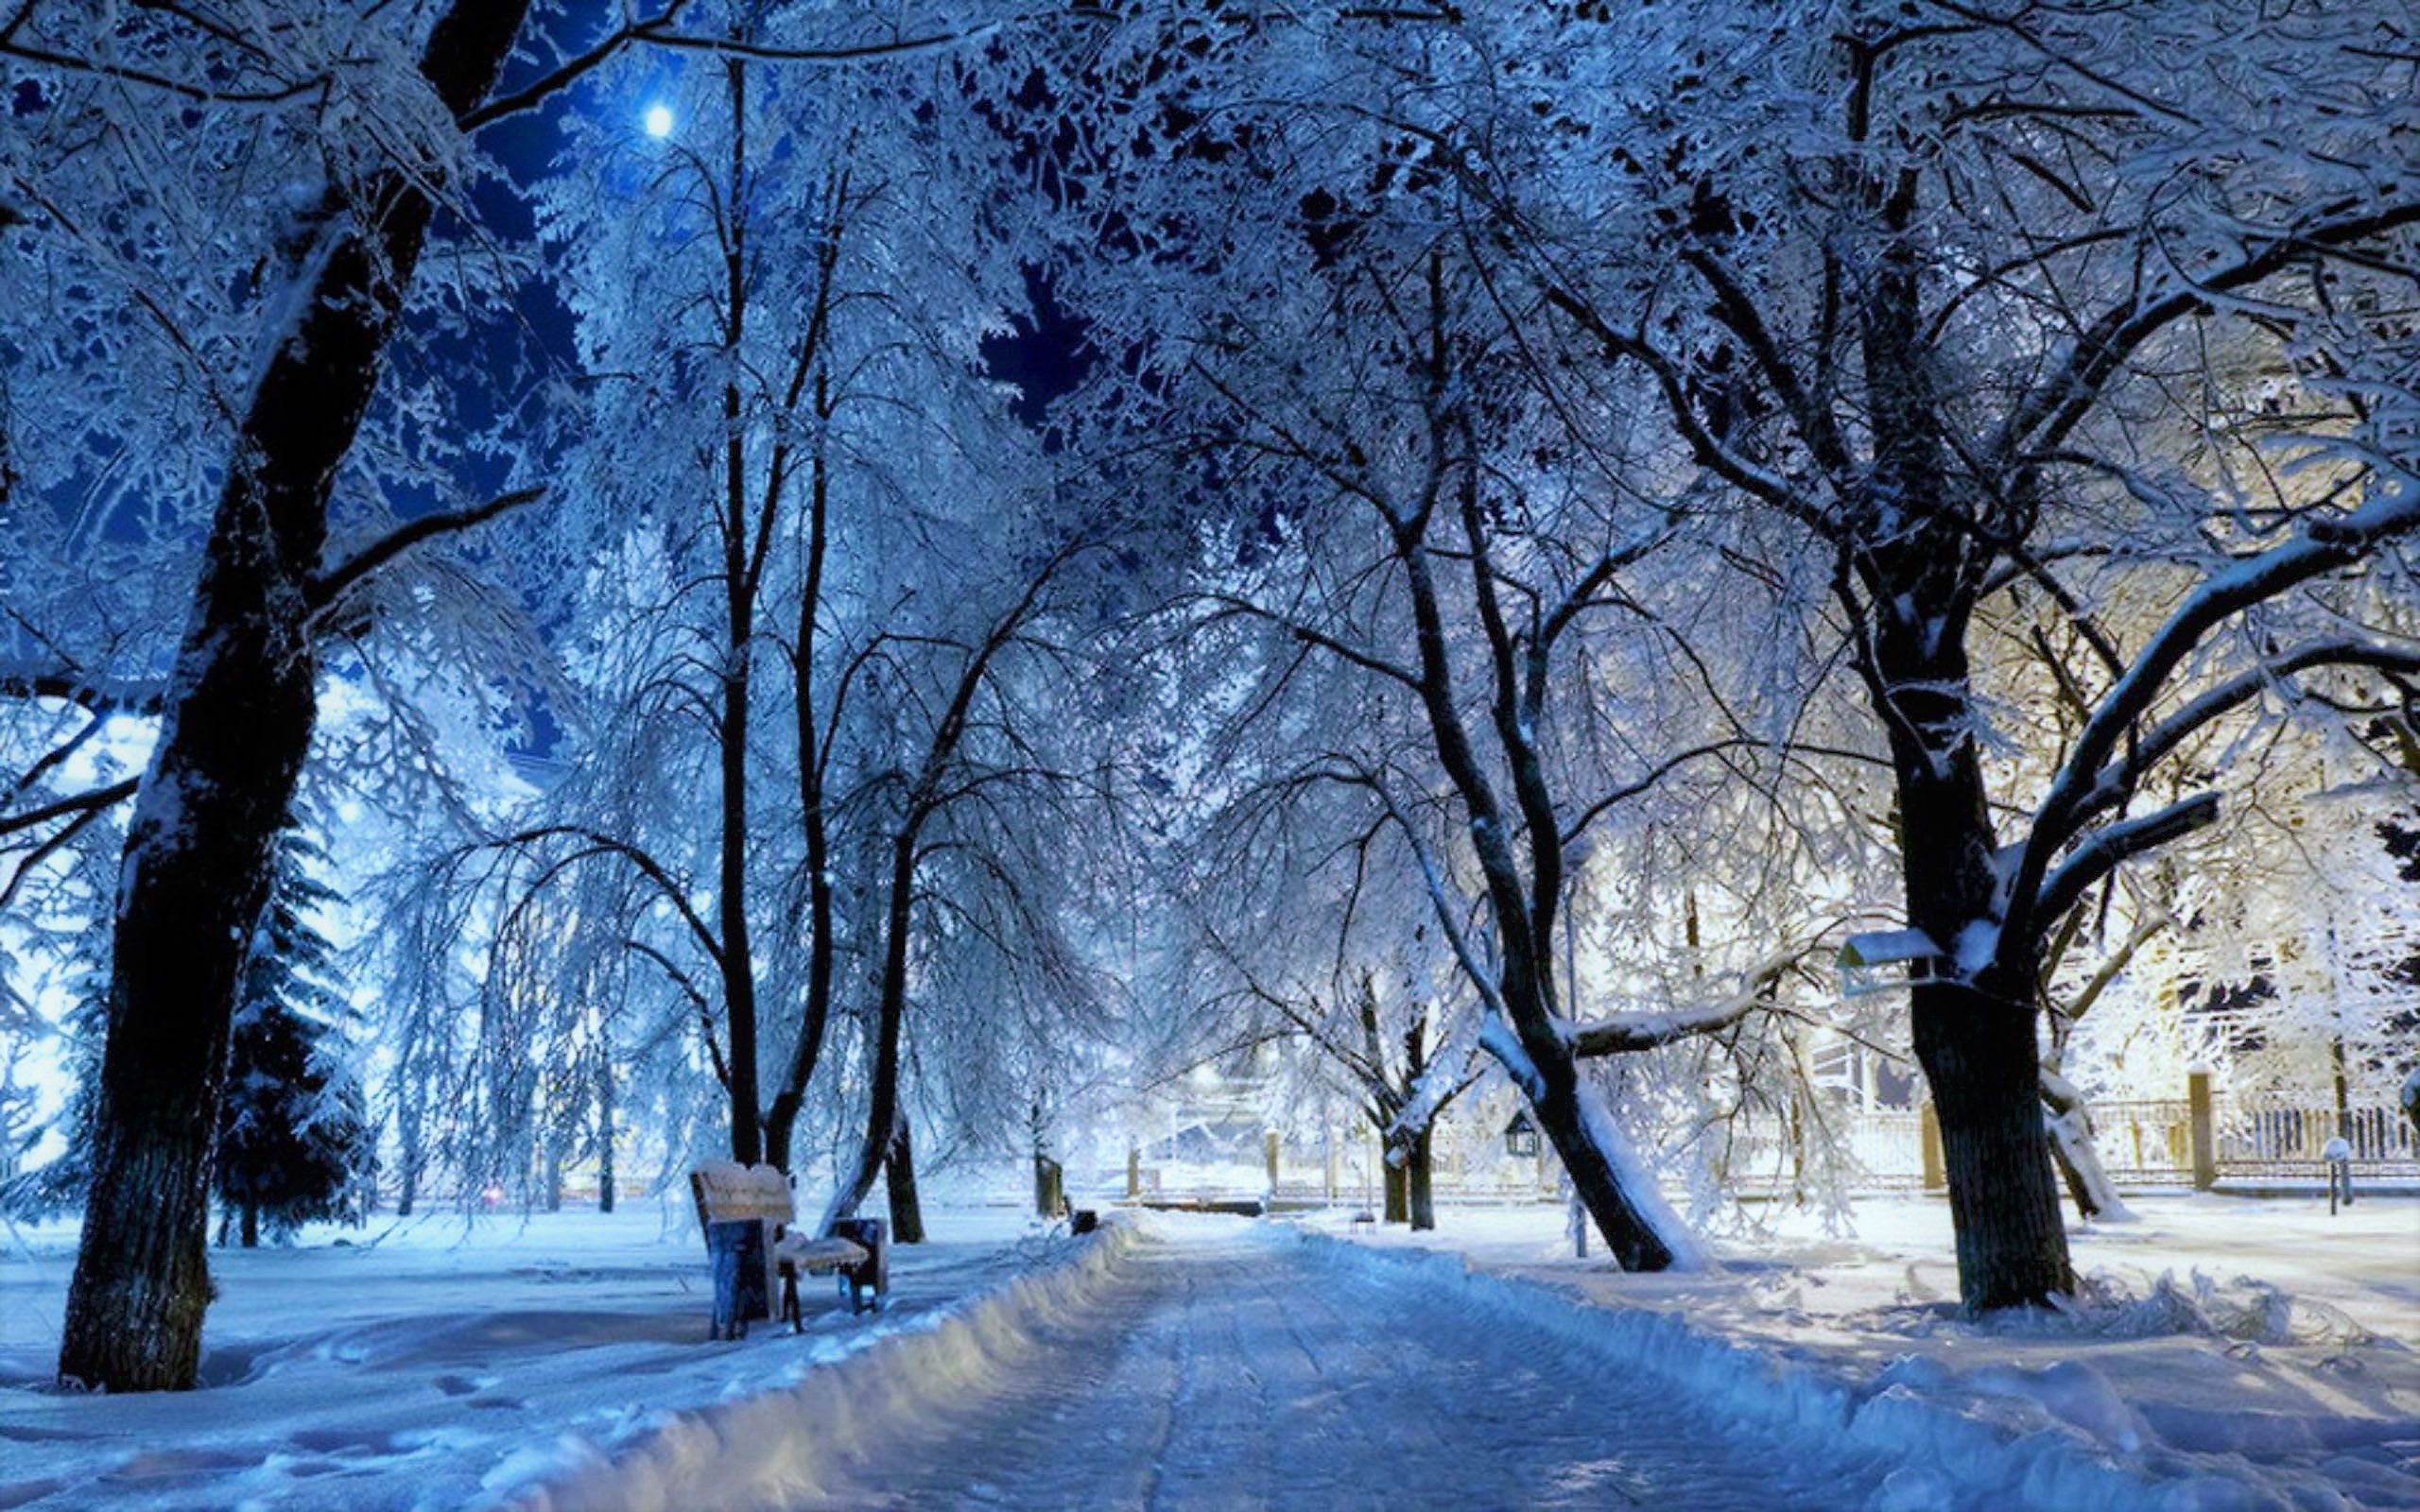 Скачать обои бесплатно Зима, Ночь, Снег, Парк, Дерево, Скамья, Фотографии картинка на рабочий стол ПК